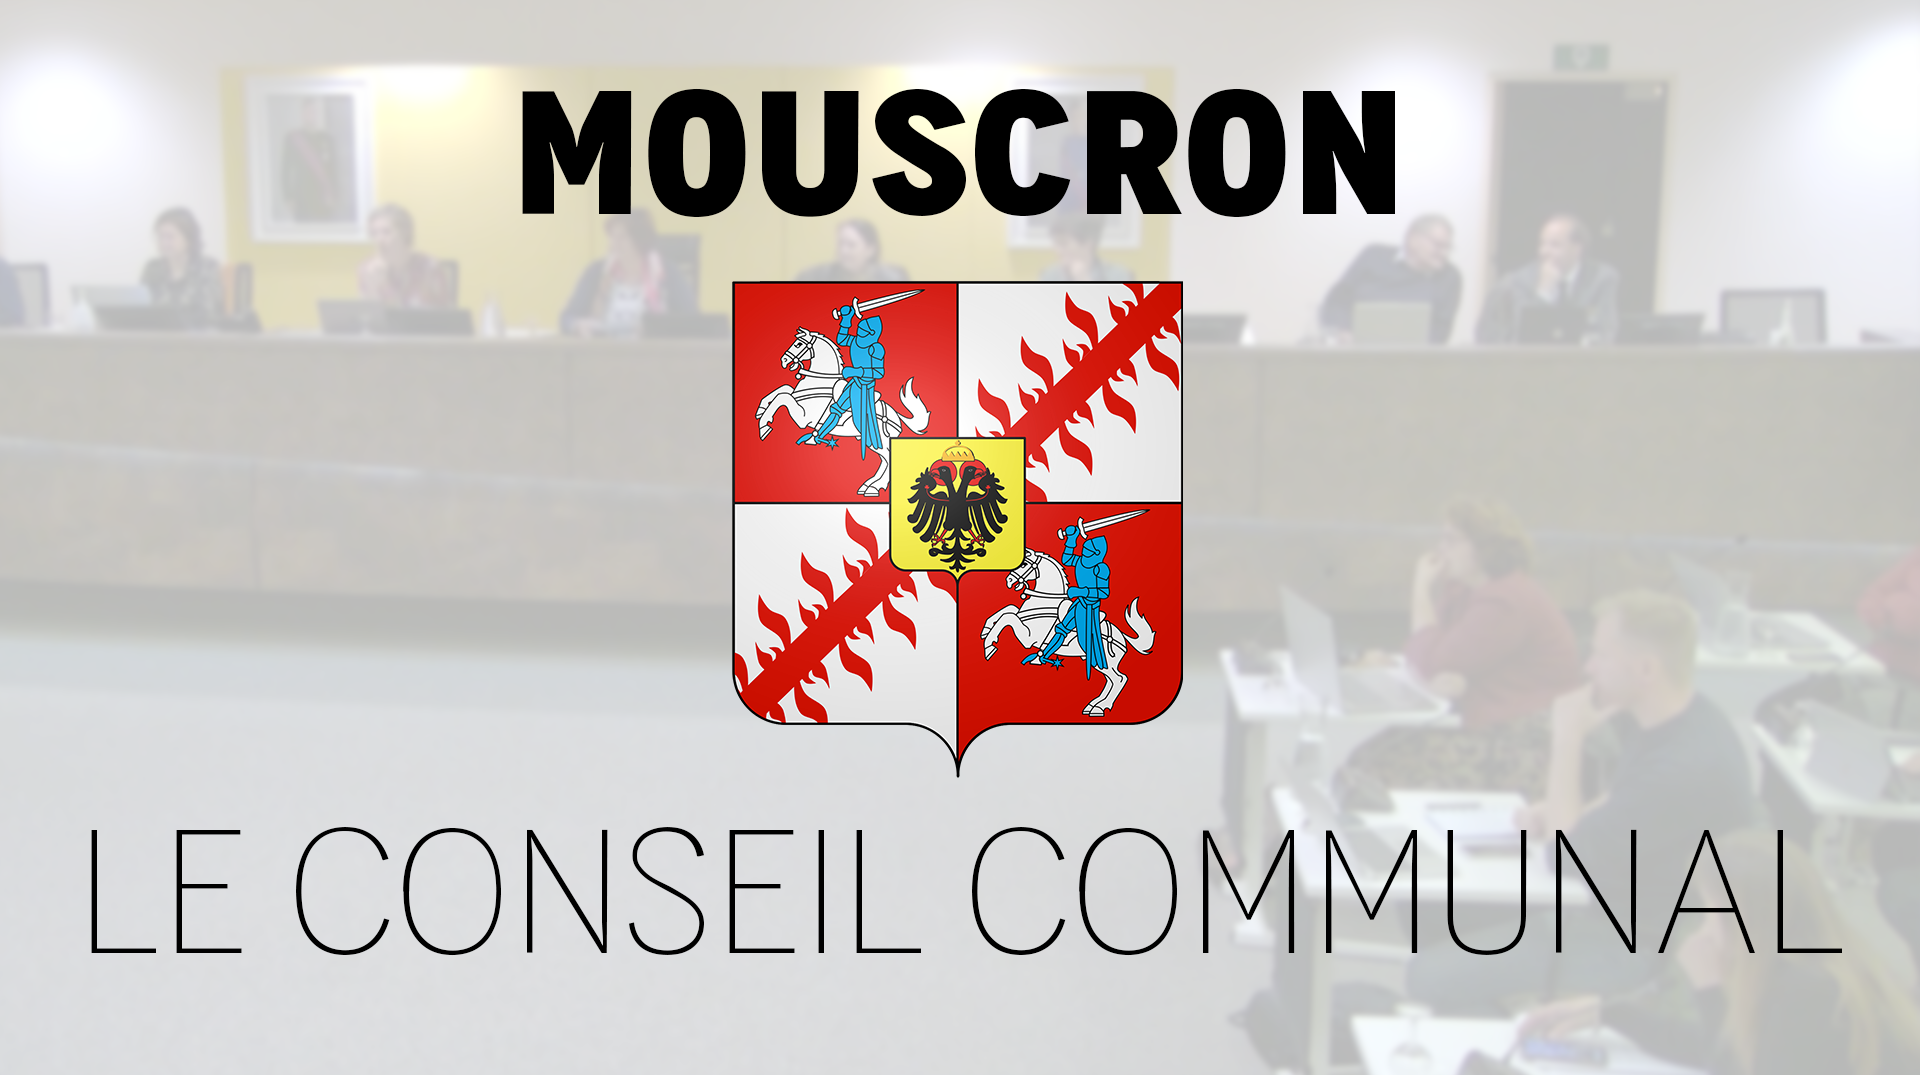 Le conseil communal de Mouscron